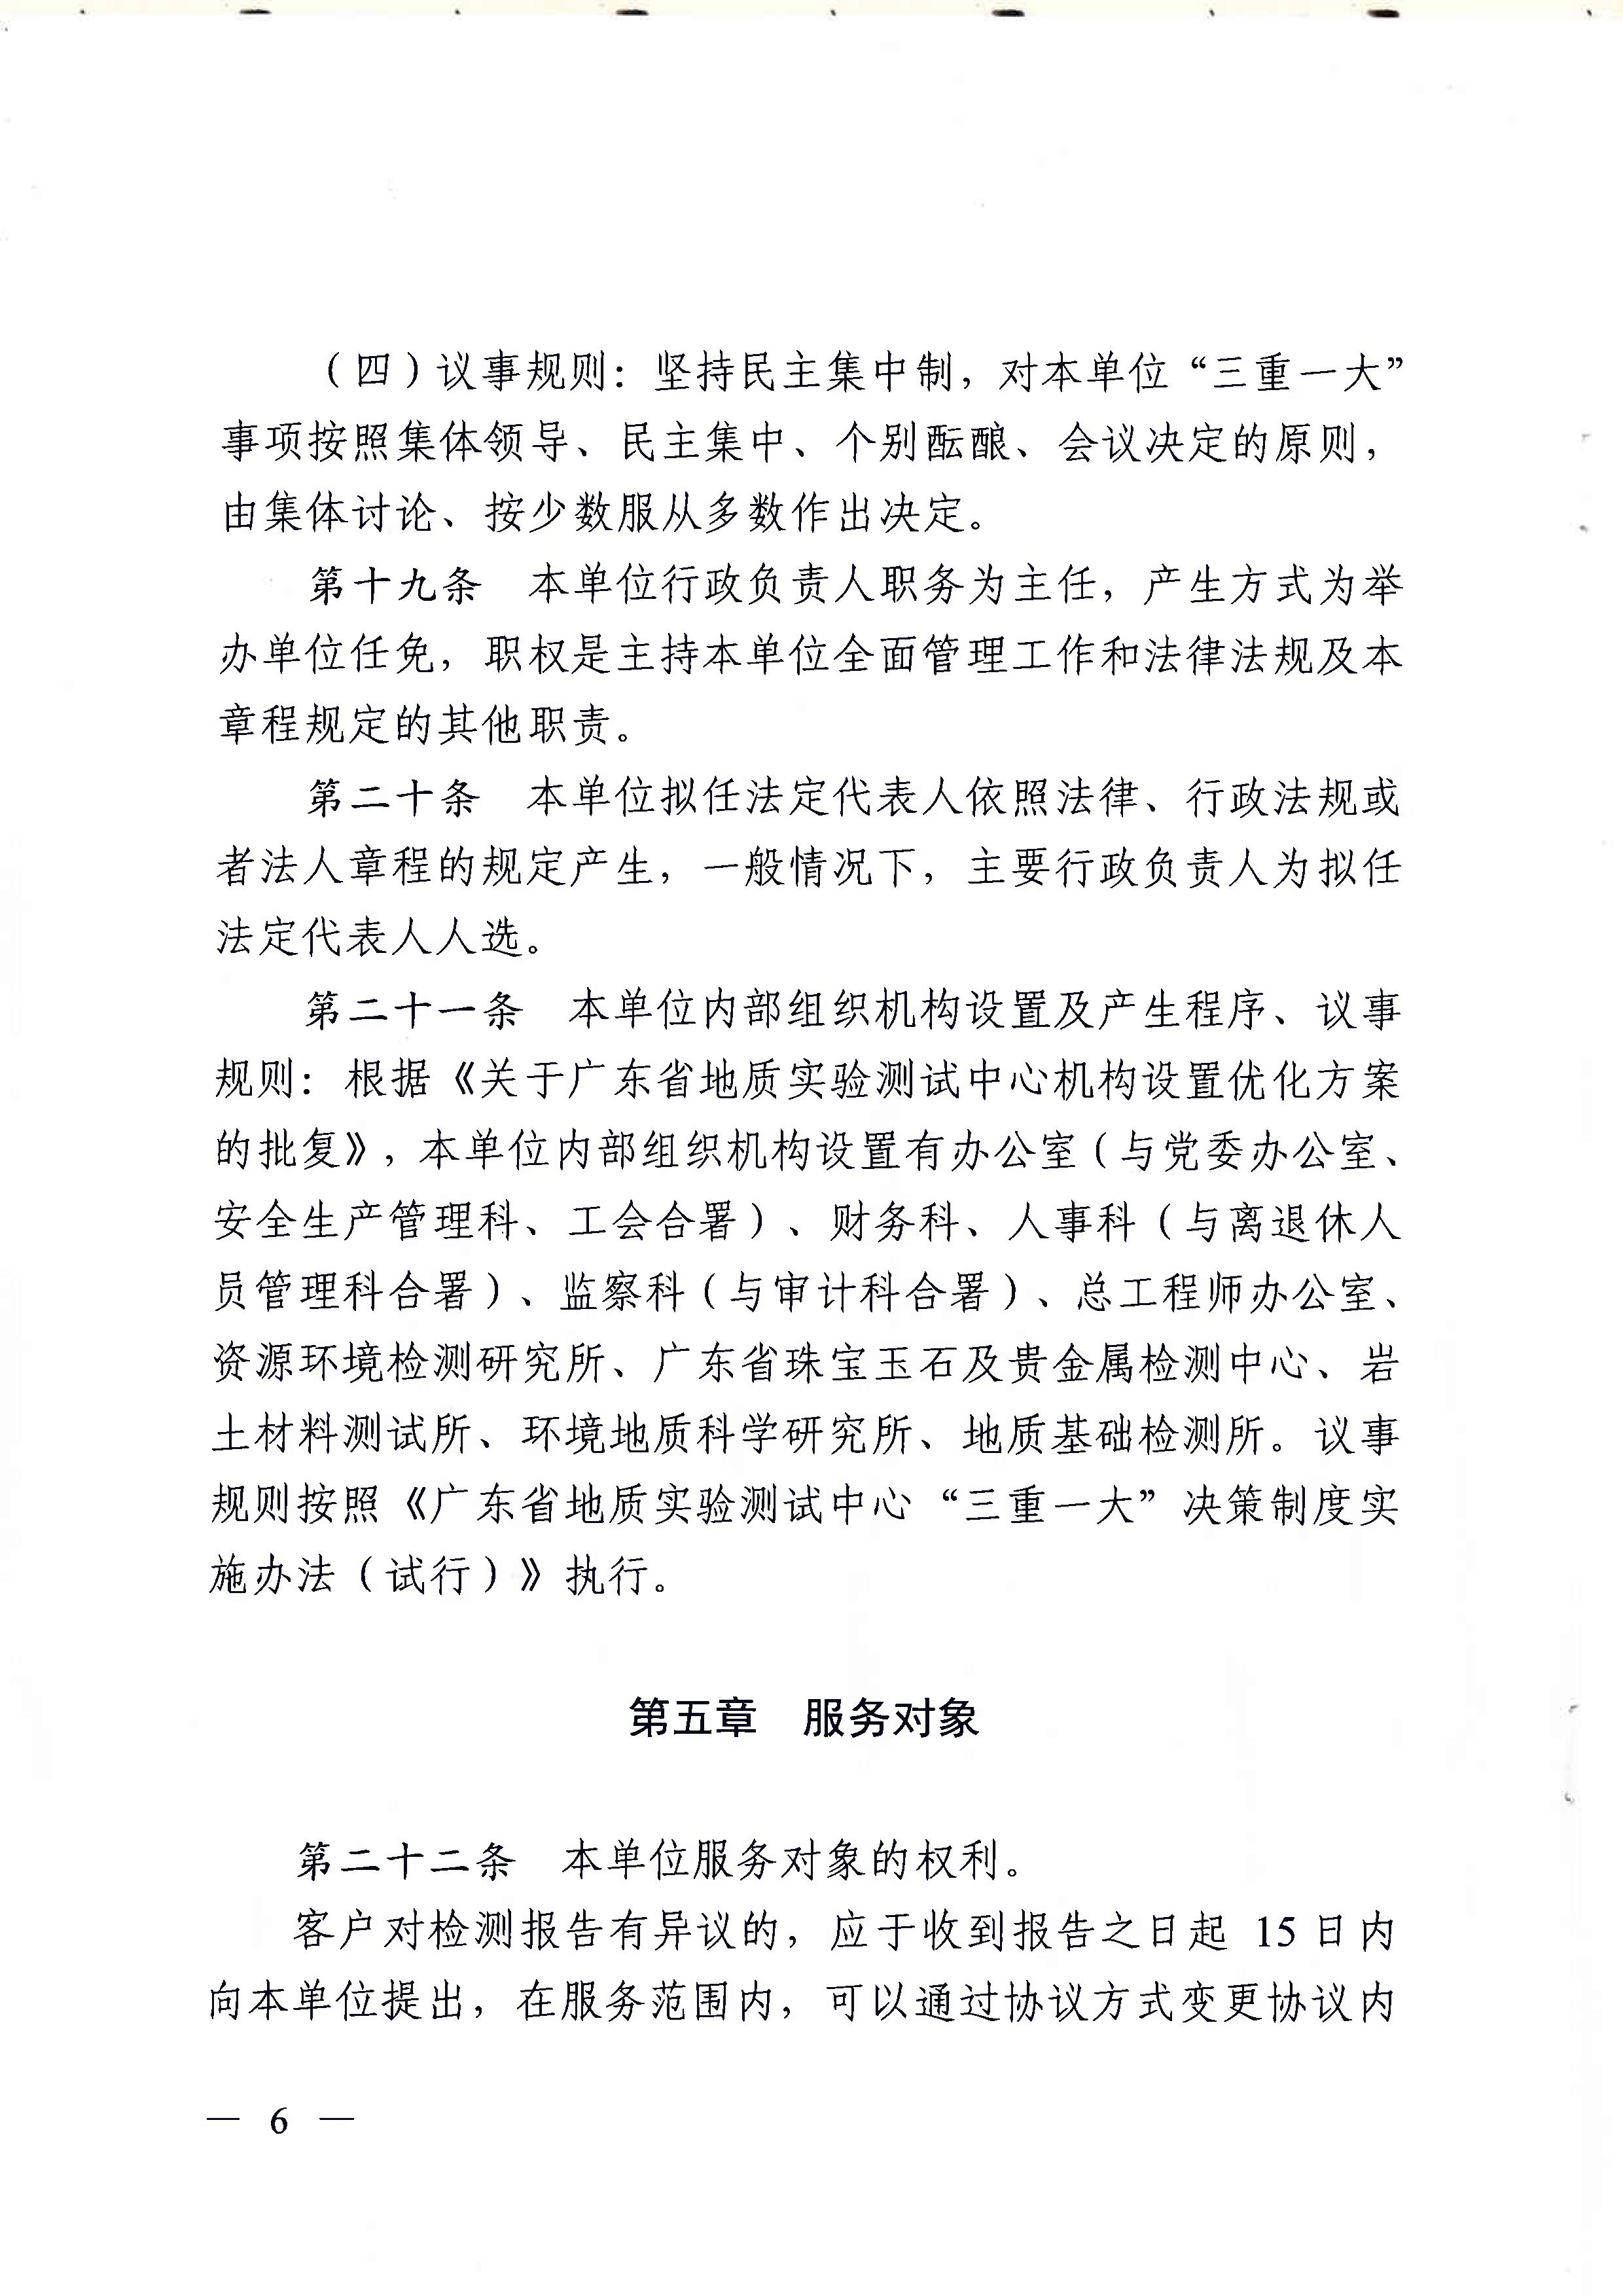 广东省地质实验测试中心事业单位章程 - 0006.jpg